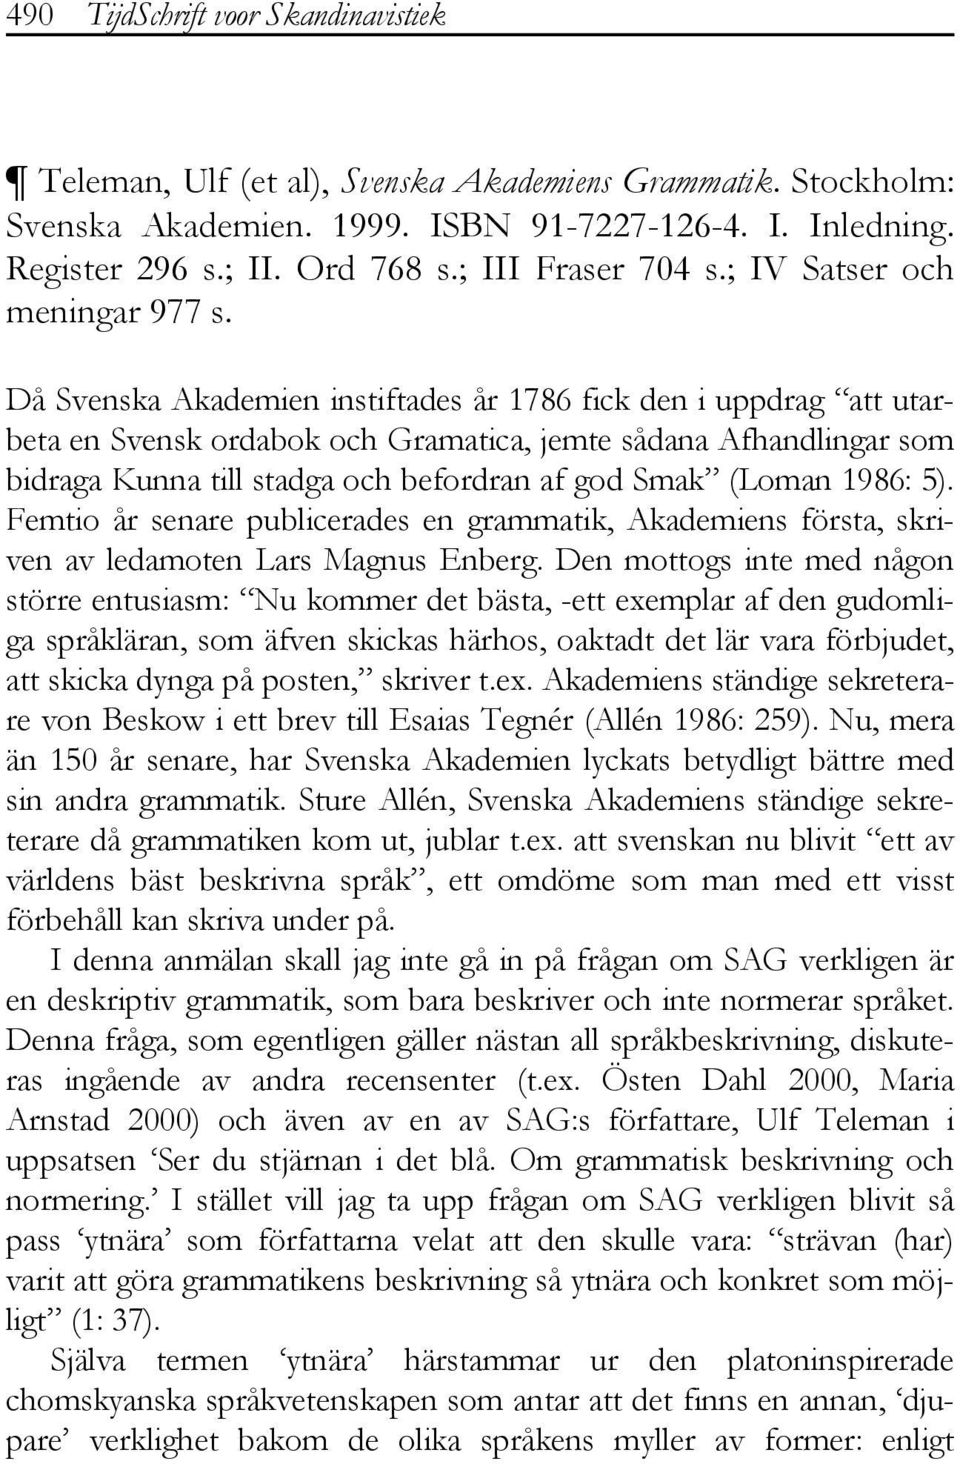 Då Svenska Akademien instiftades år 1786 fick den i uppdrag att utarbeta en Svensk ordabok och Gramatica, jemte sådana Afhandlingar som bidraga Kunna till stadga och befordran af god Smak (Loman